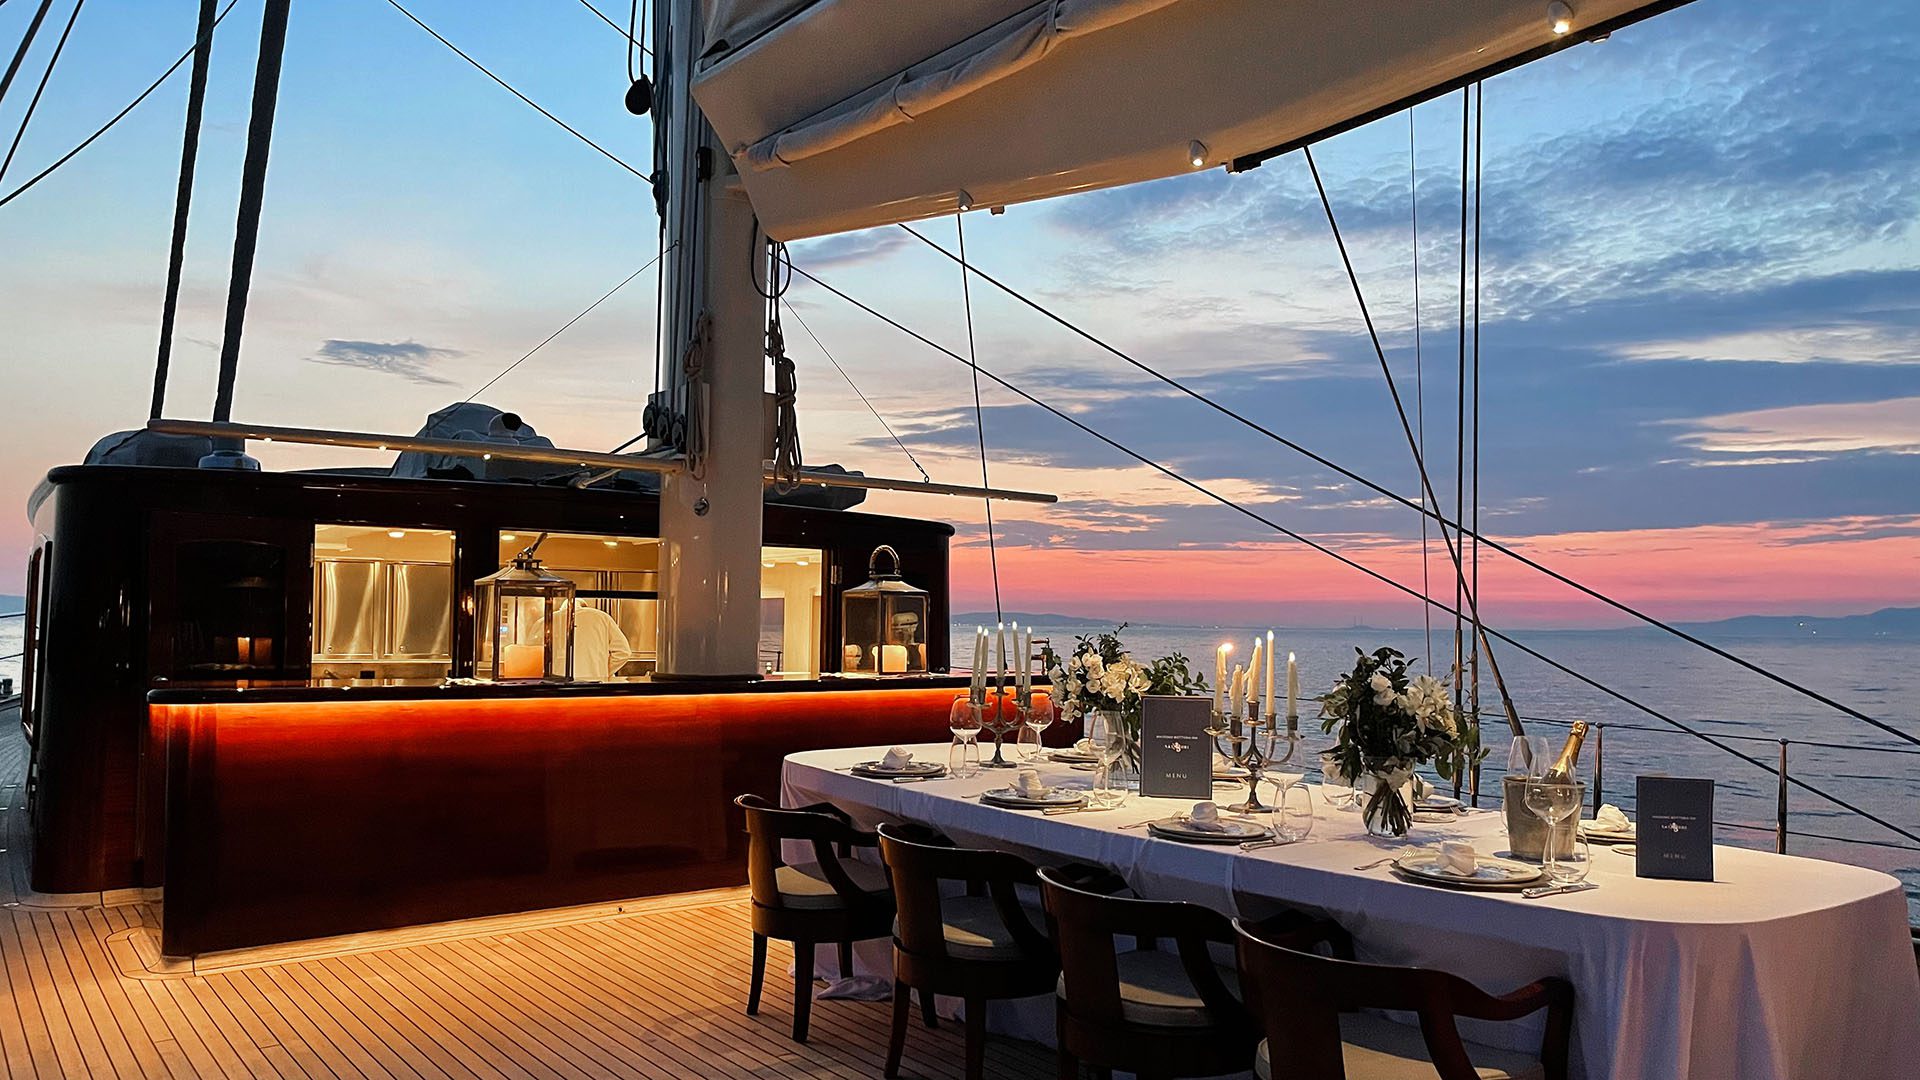 3 Michelin Star Chef Massimo Bottura creates unique gastro experience onboard luxury yacht Satori